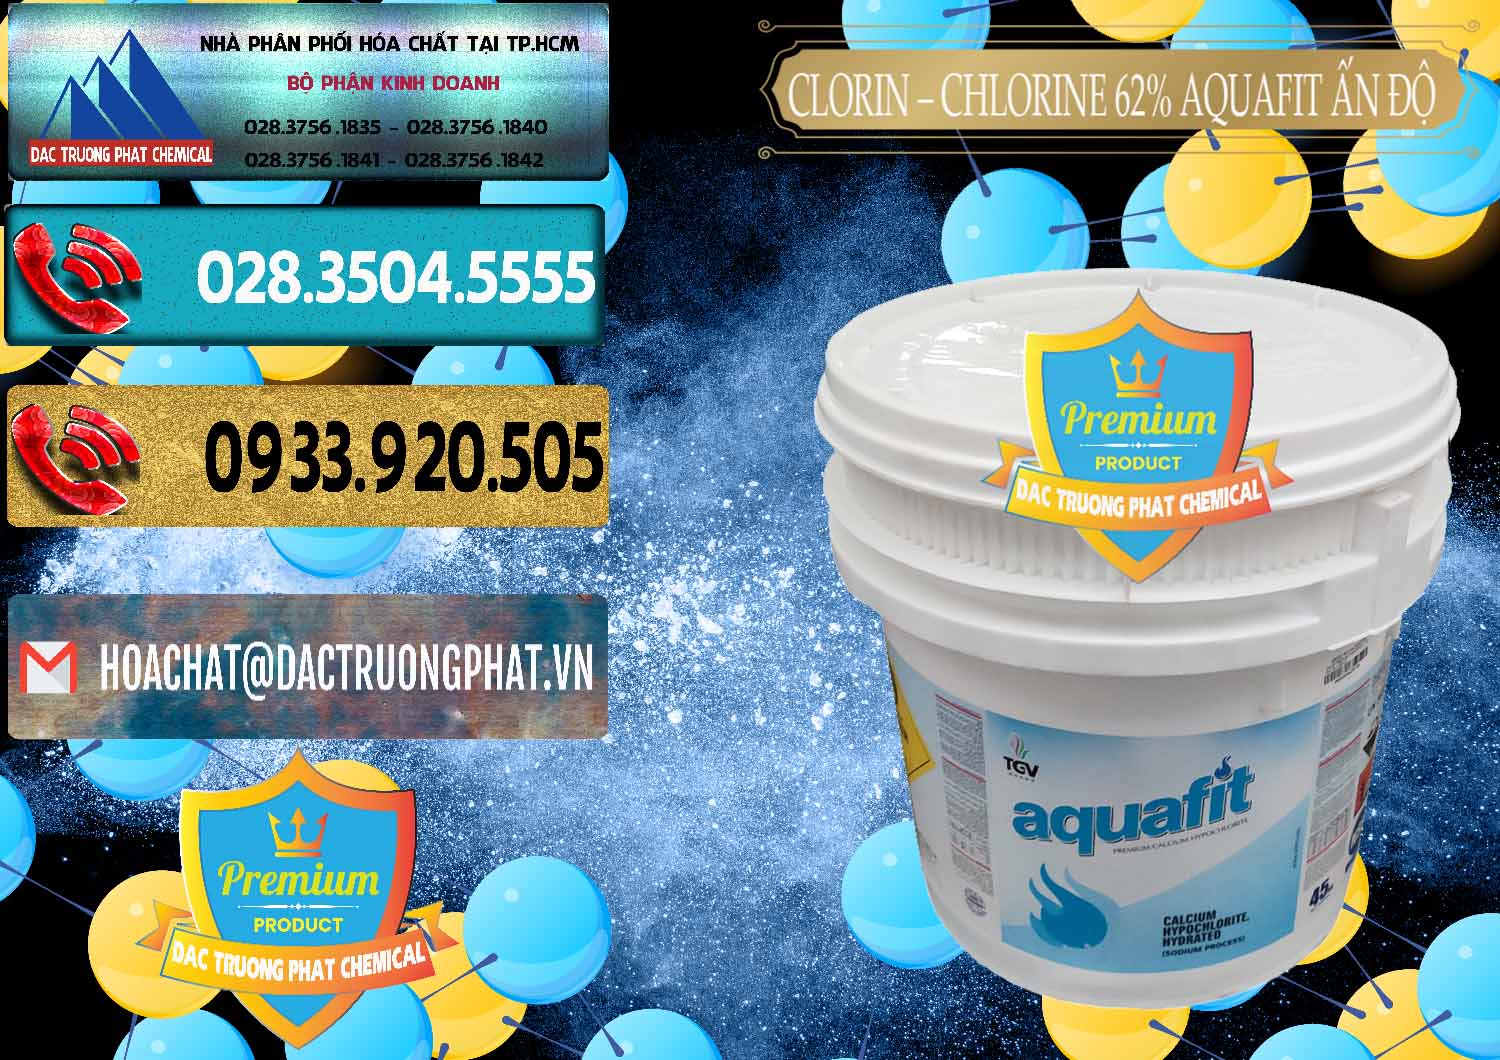 Đơn vị chuyên phân phối & bán Clorin - Chlorine 62% Aquafit Thùng Lùn Ấn Độ India - 0057 - Phân phối - kinh doanh hóa chất tại TP.HCM - hoachatdetnhuom.com